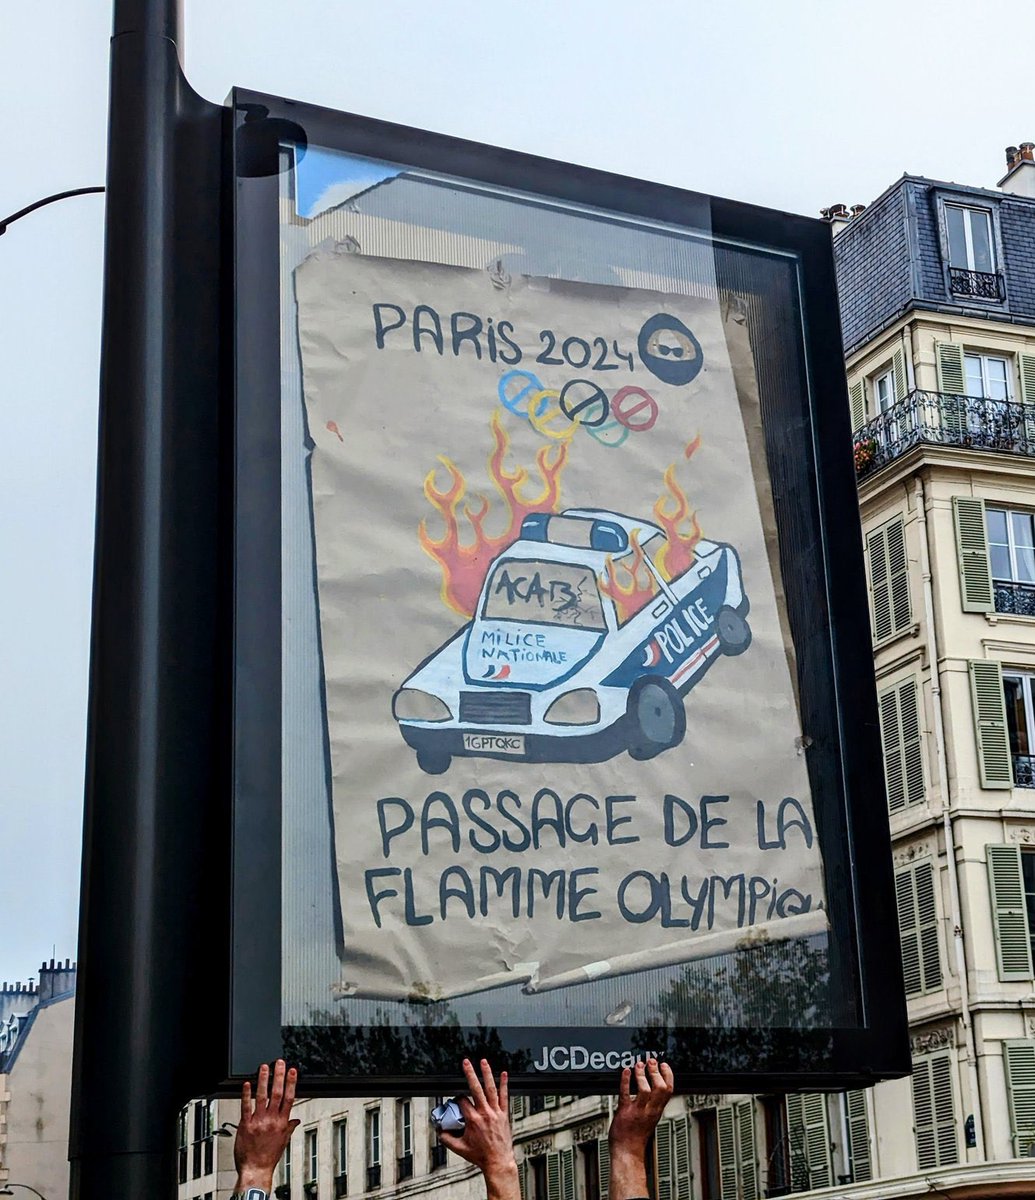 Affichage de cette photo sur #Paris en référence aux #JOP 
Rappel: il y a 8 ans, 4 policiers ont failli brûlé vifs dans un VL👮🏼sur #Virychatillon
Ces mains qui ont collé ça, appartiennent à des personnes qui sont vraiment à gerber!!
Aucune humanité, racisme anti flic primaire🤮